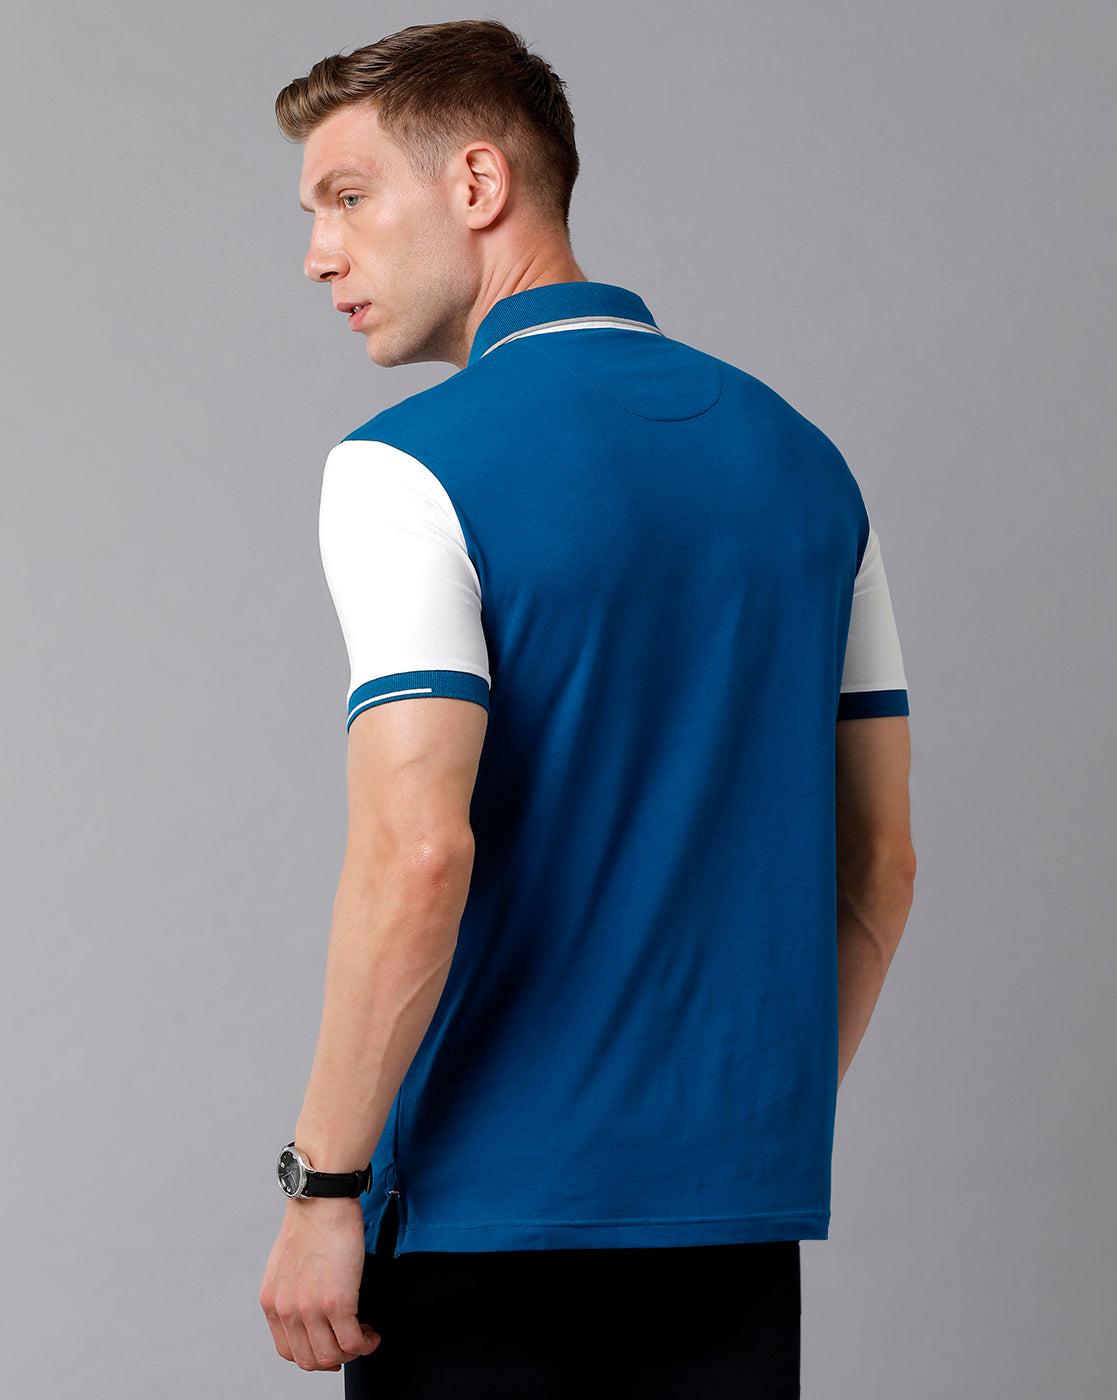 Classic Polo Men's Cotton Color Block Half Sleeve Slim Fit Polo Neck Multicolor T-Shirt | Prm - 727 A